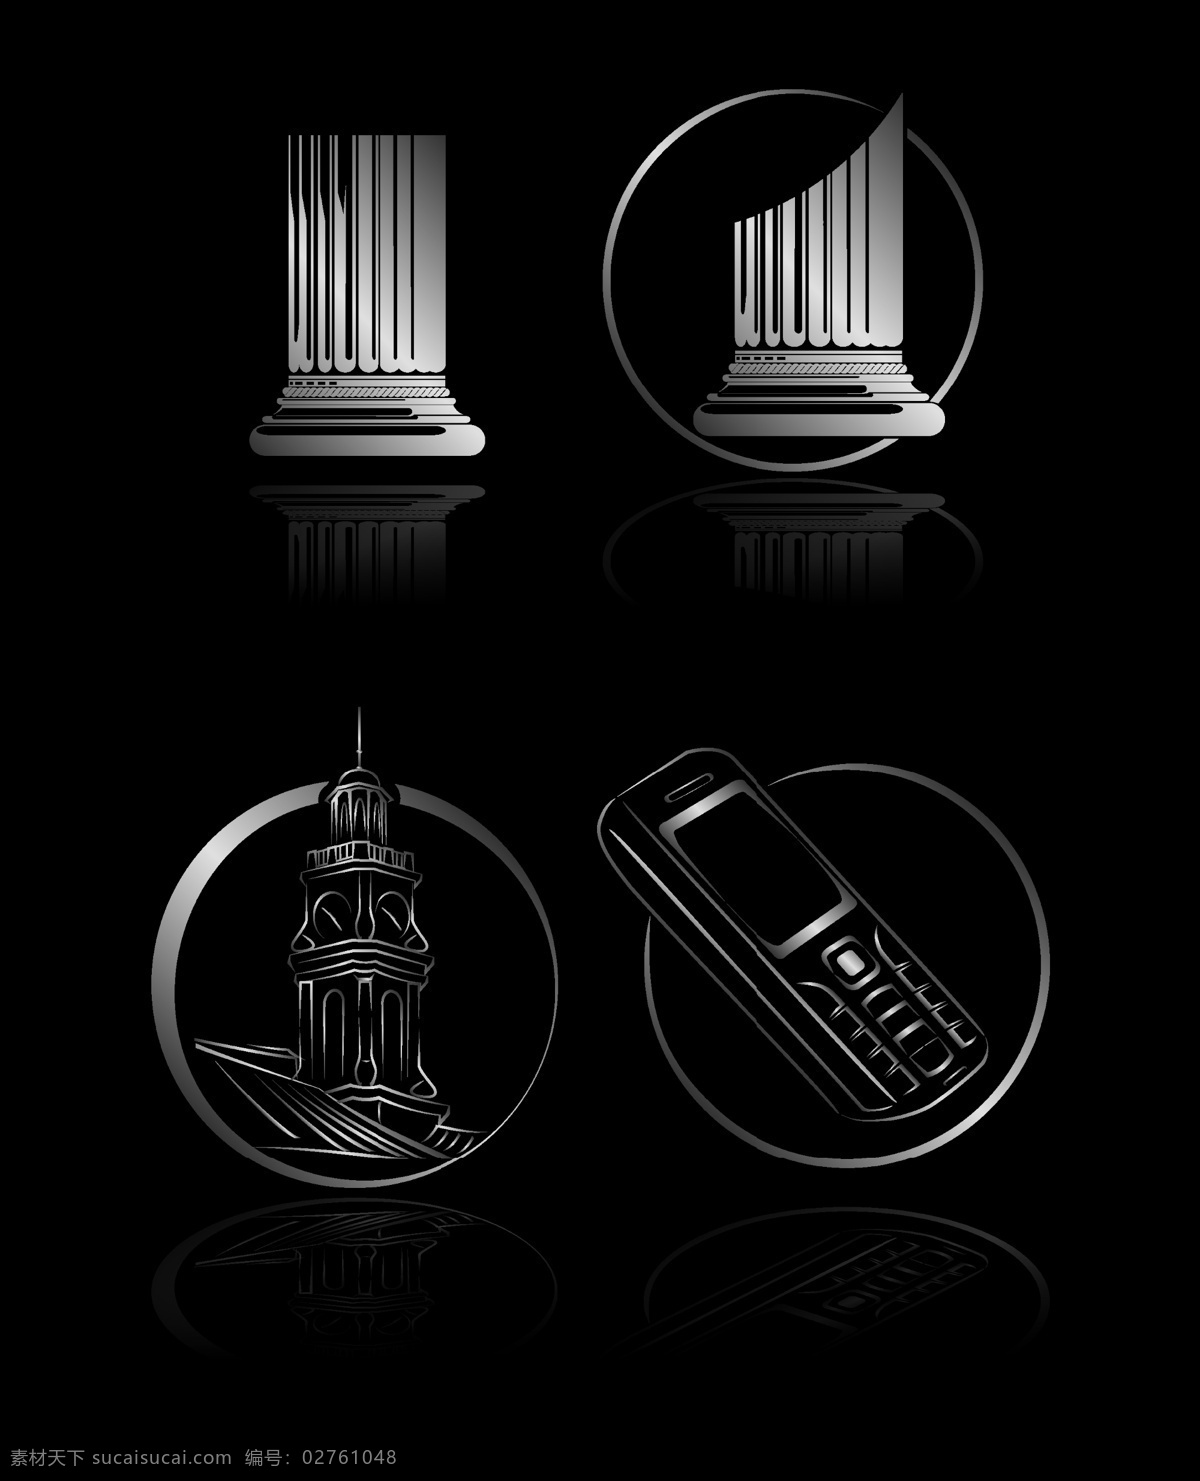 黑色 logo1 手机 柱子 谏玪ogo1 圆 矢量设计图 矢量 psd源文件 logo设计